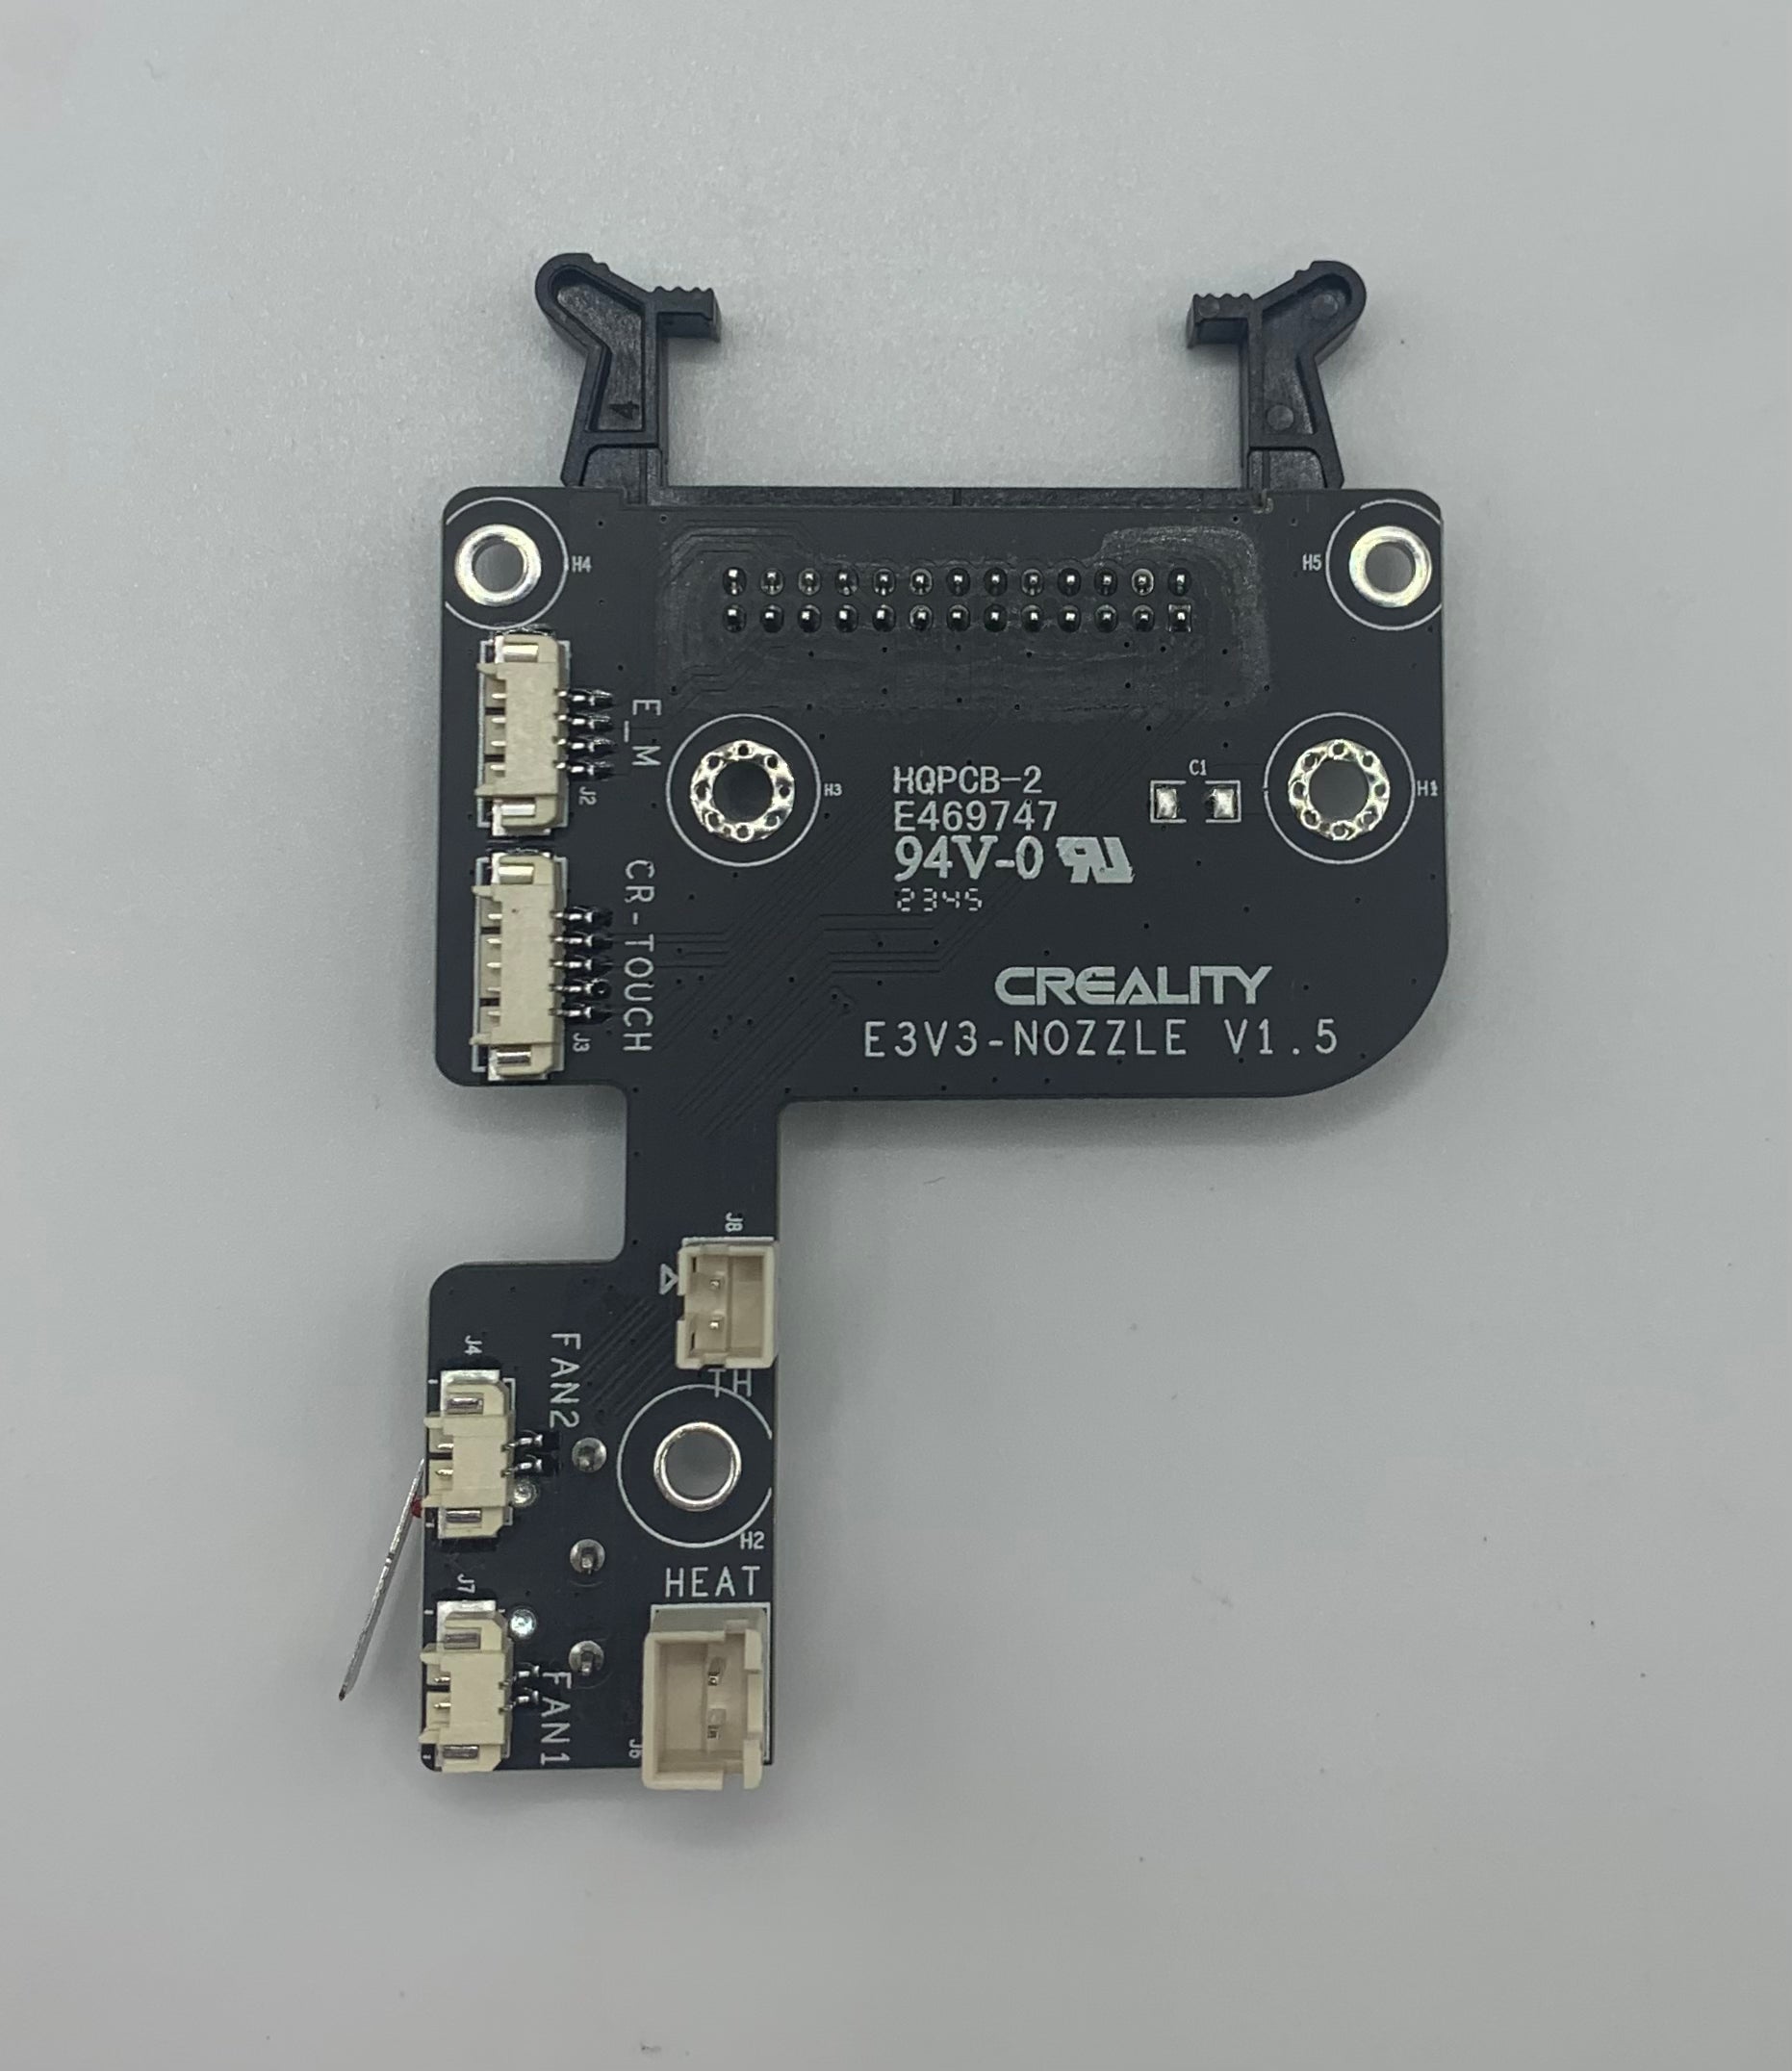 Creality Ender 3 V3 SE Toolhead PCB